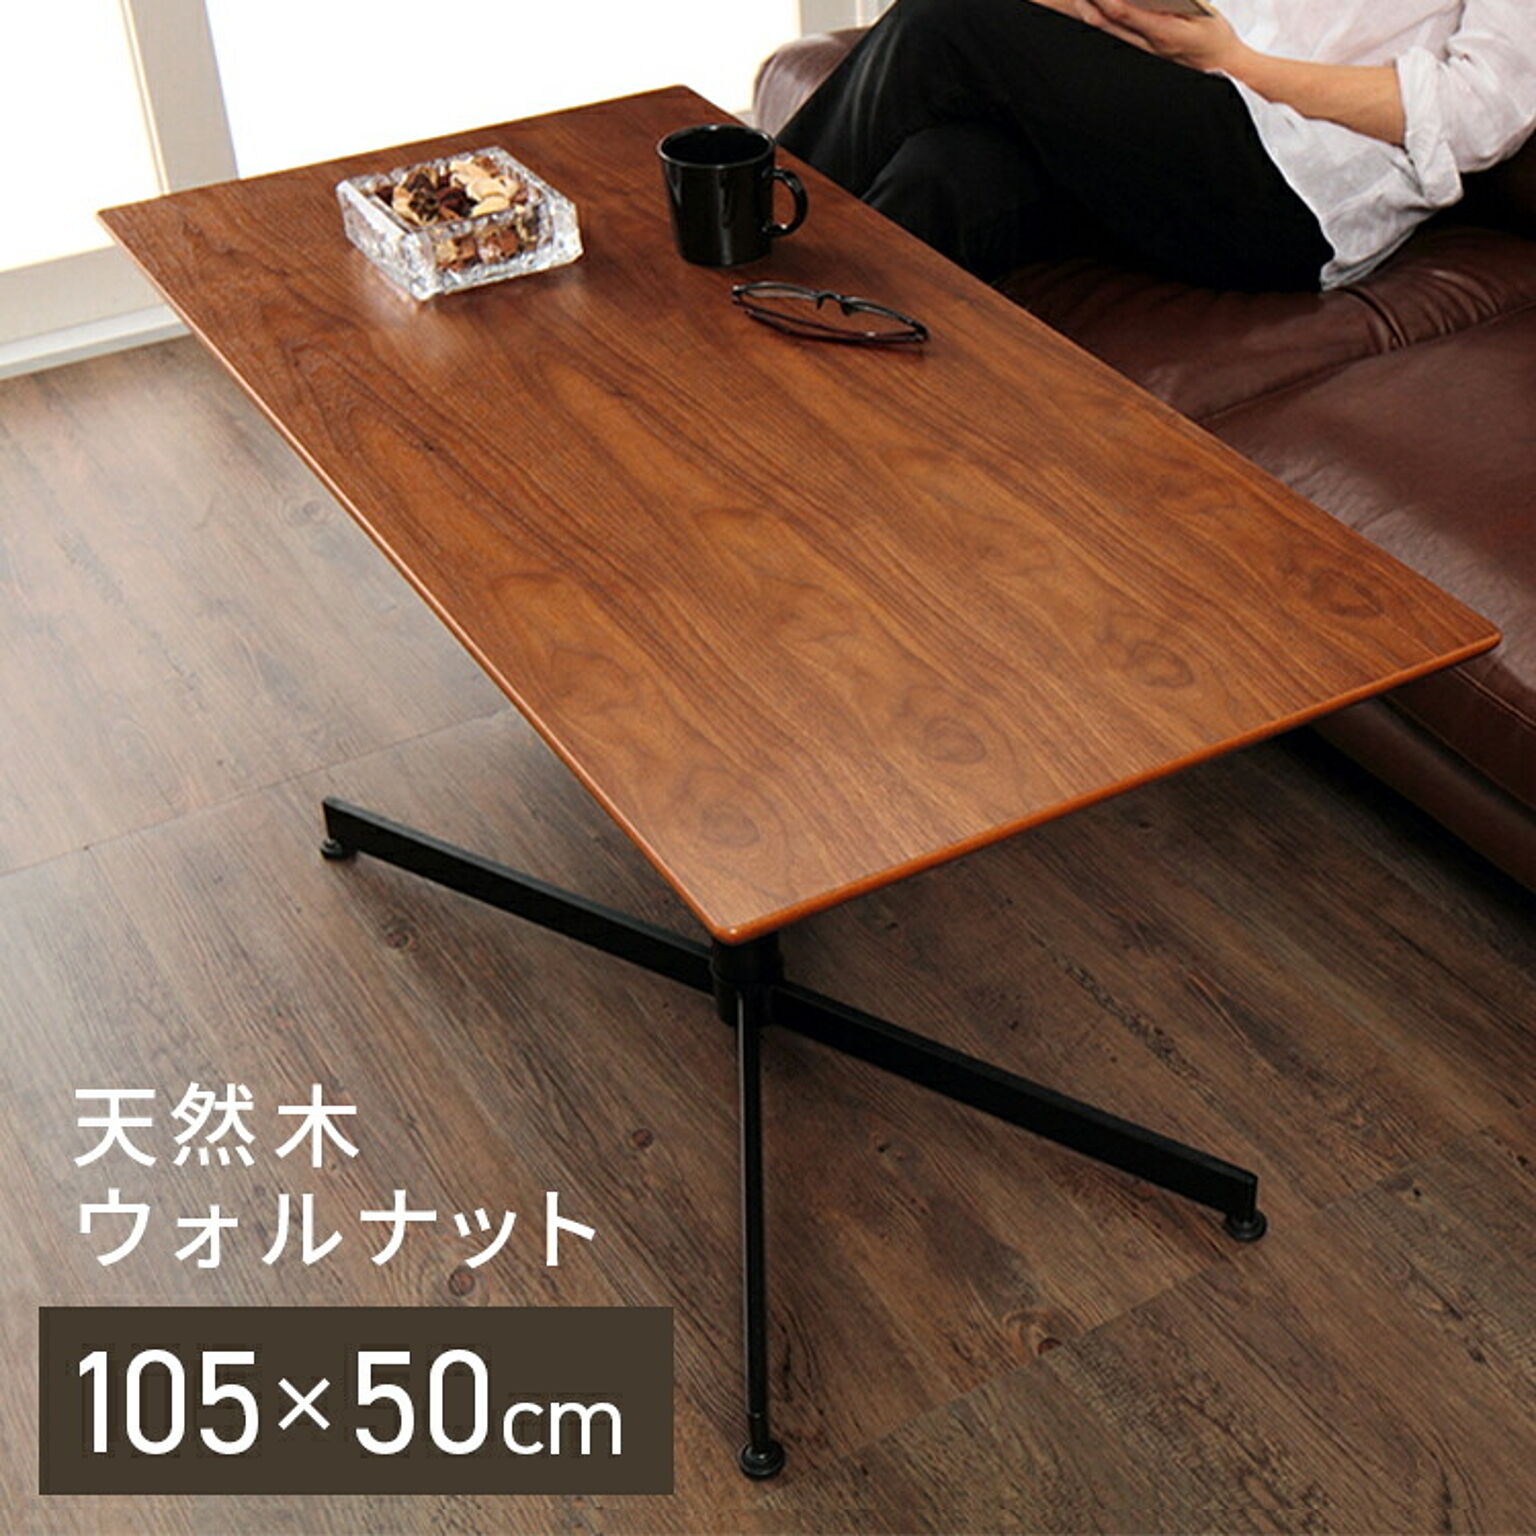 ウチカフェテーブル トラヴィ 105×50 木製 カフェ おしゃれ ダイニング 食卓 テーブル 机 デスク ダイニングテーブル